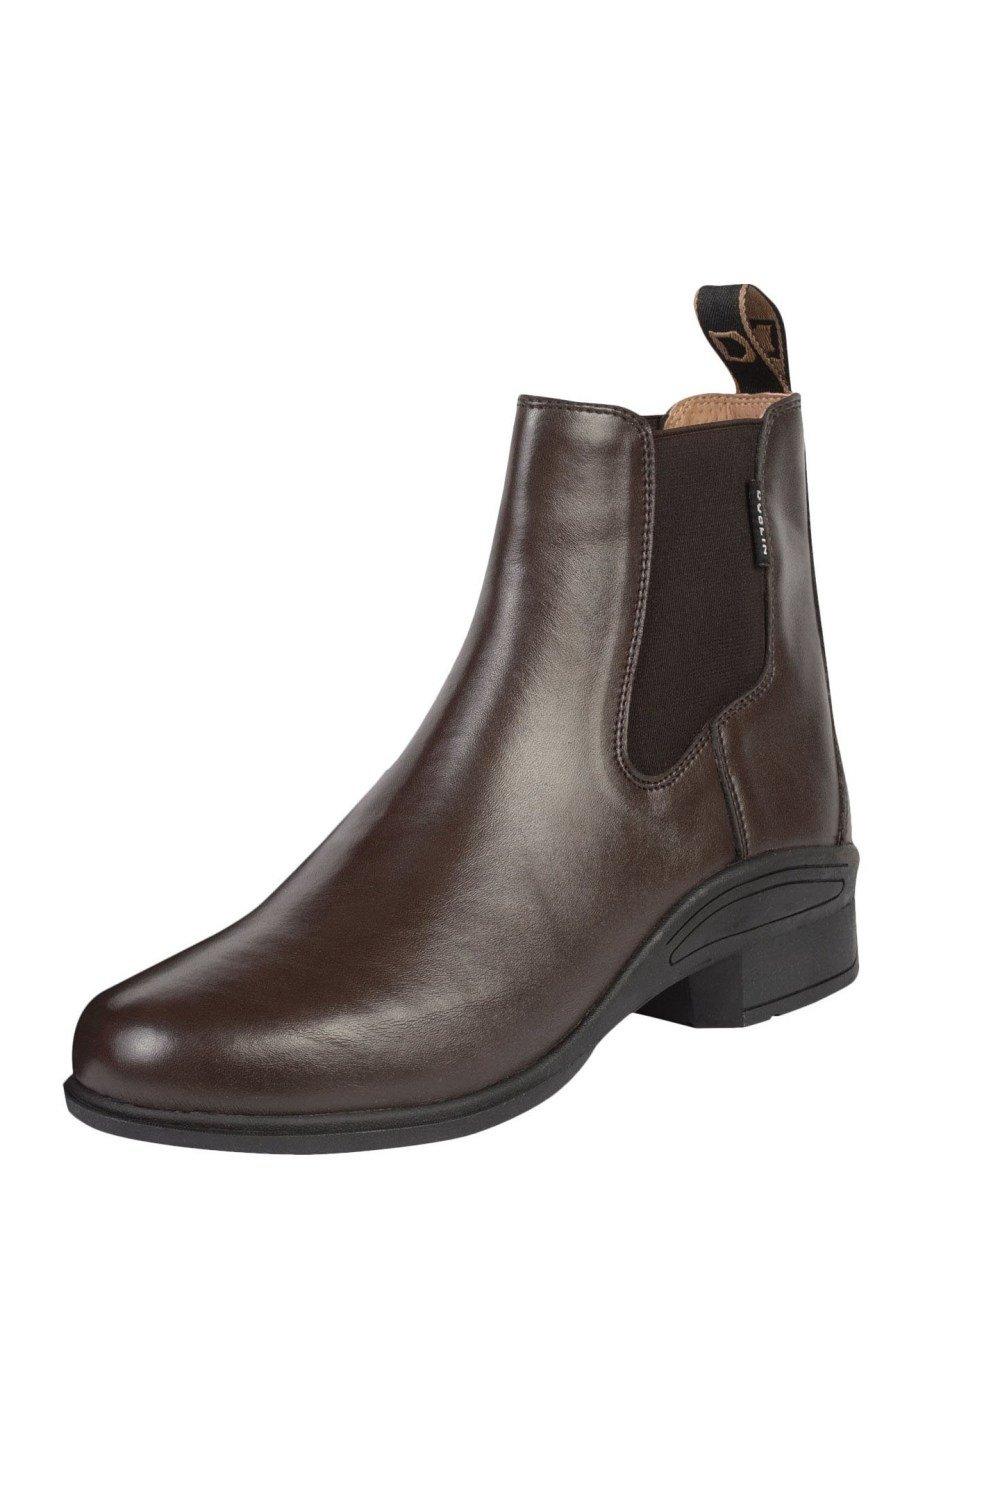 Ботинки Altitude Джодхпур Dublin, коричневый кожаные фундаментные ботинки джодхпур dublin коричневый